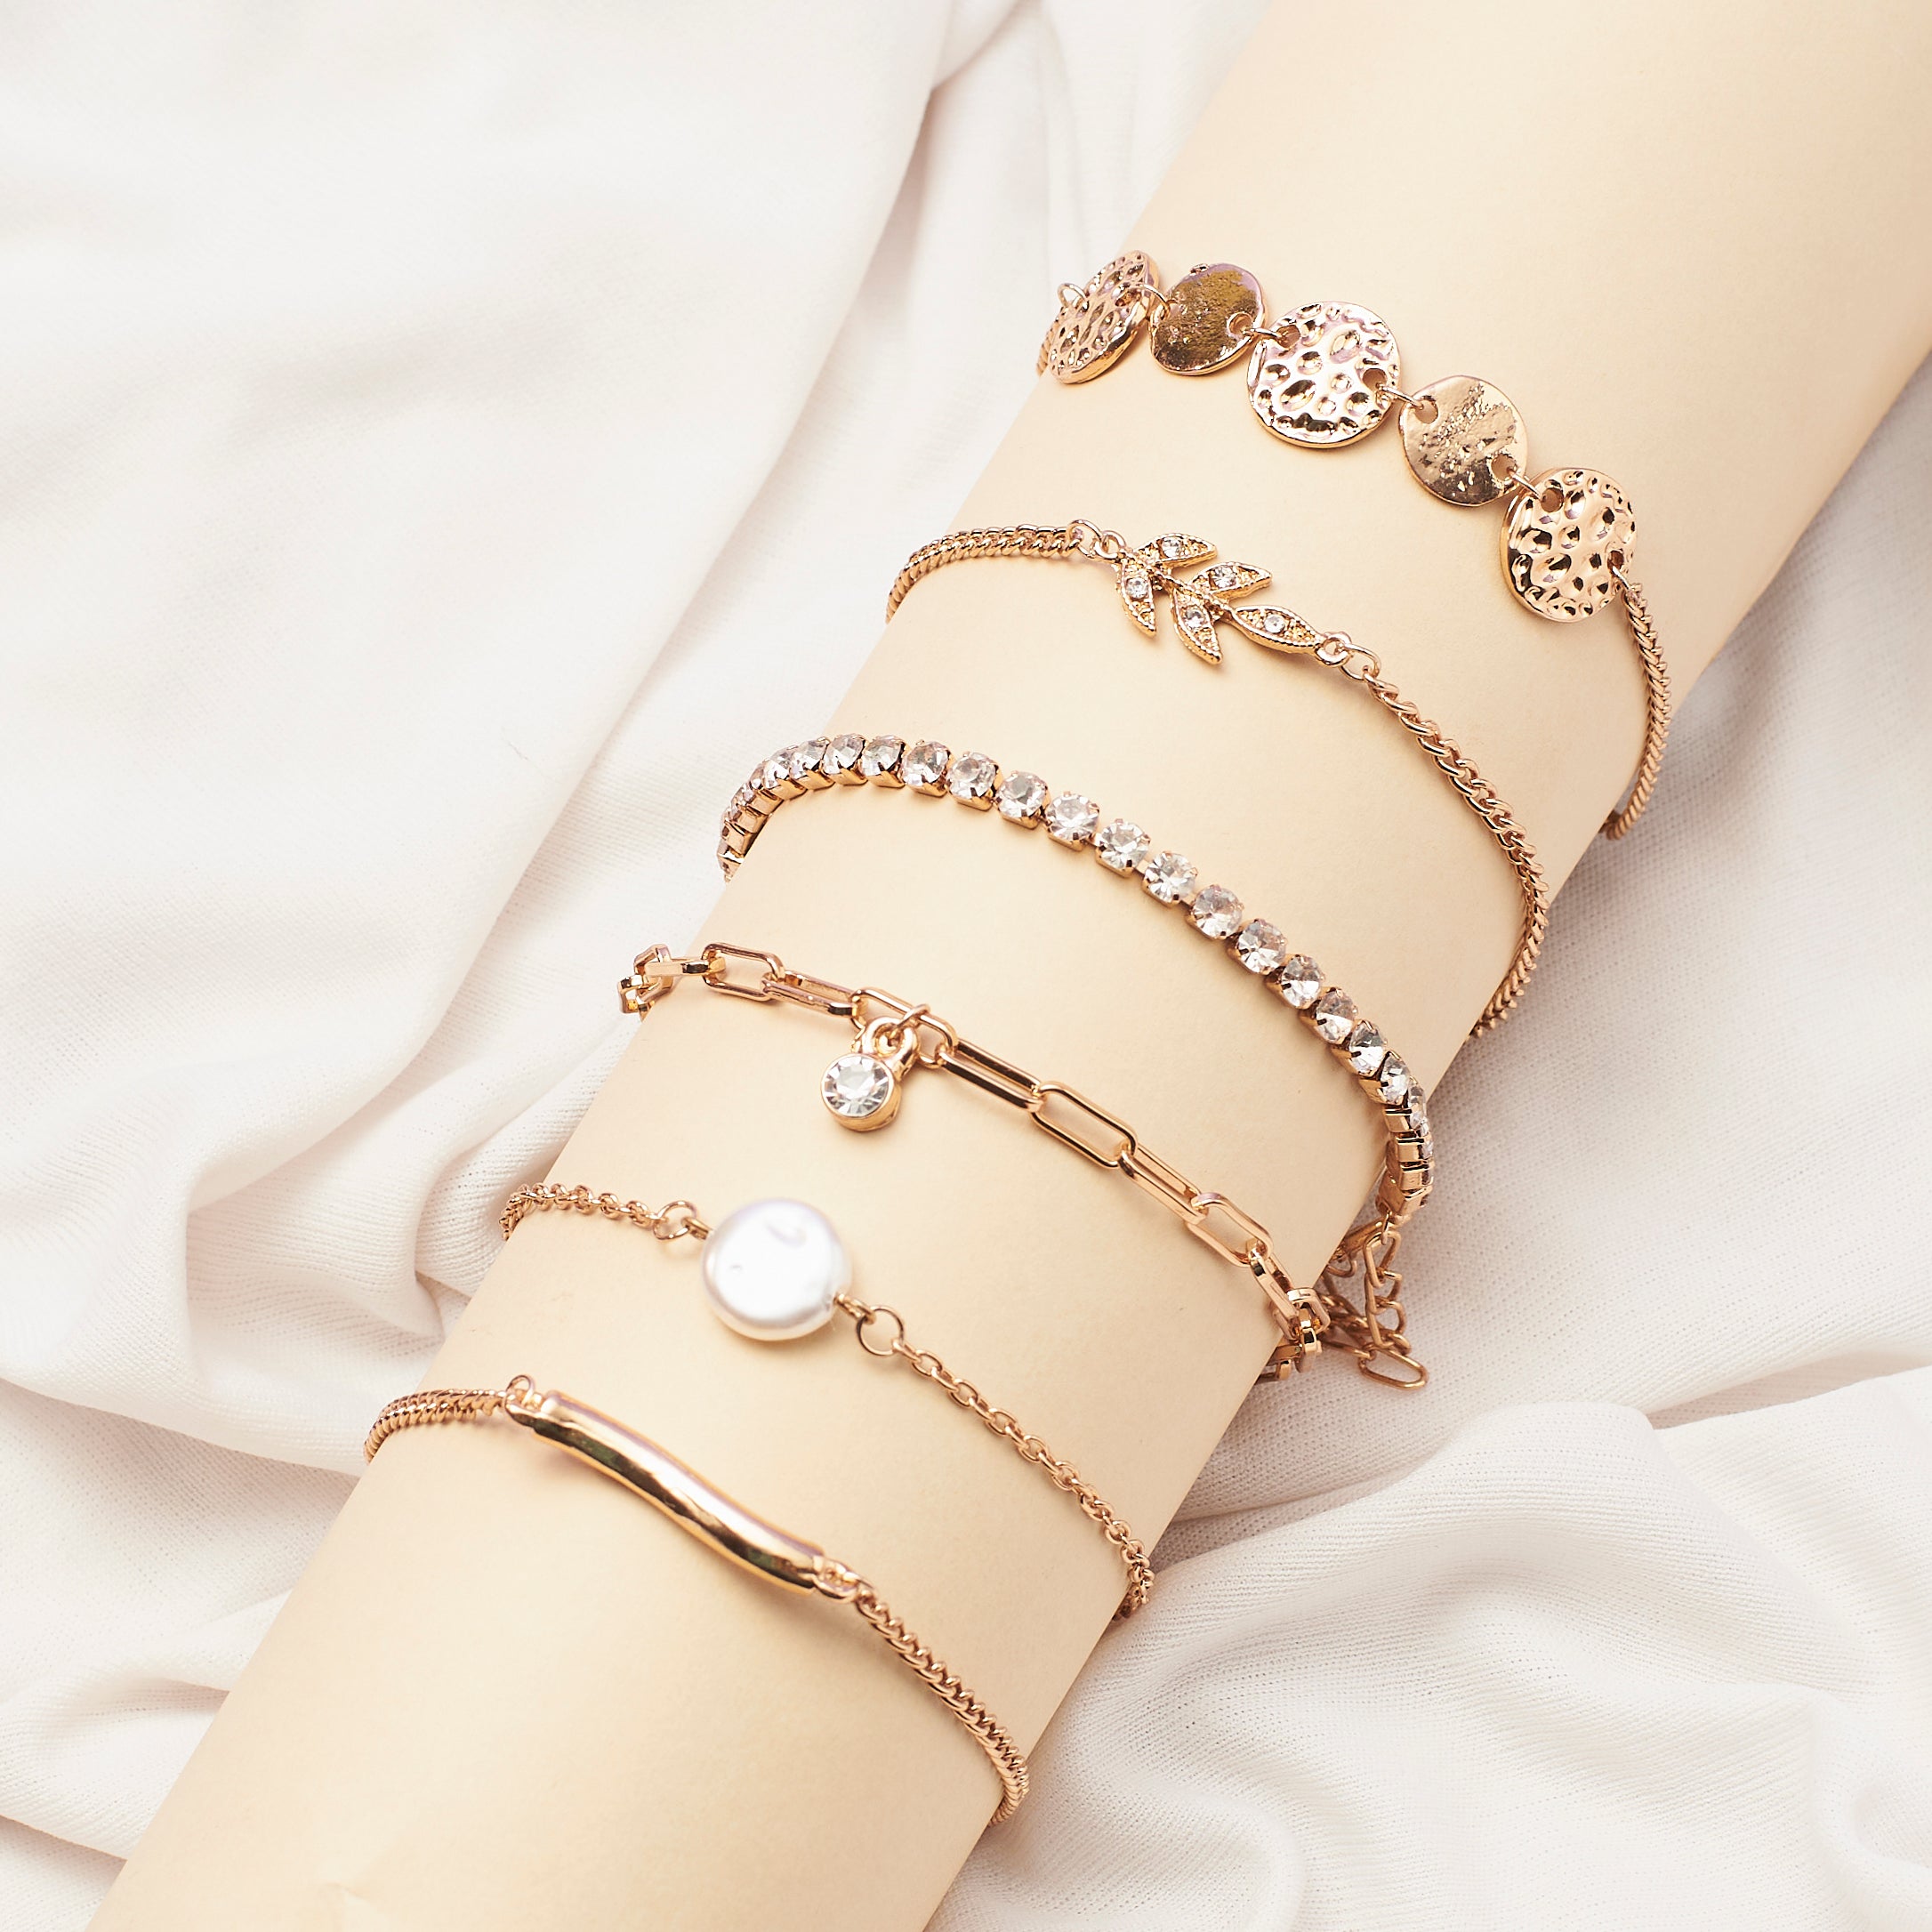 2MM Rose Gold Filled Bracelet with 3MM Sterling Silver – Karen Lazar Design